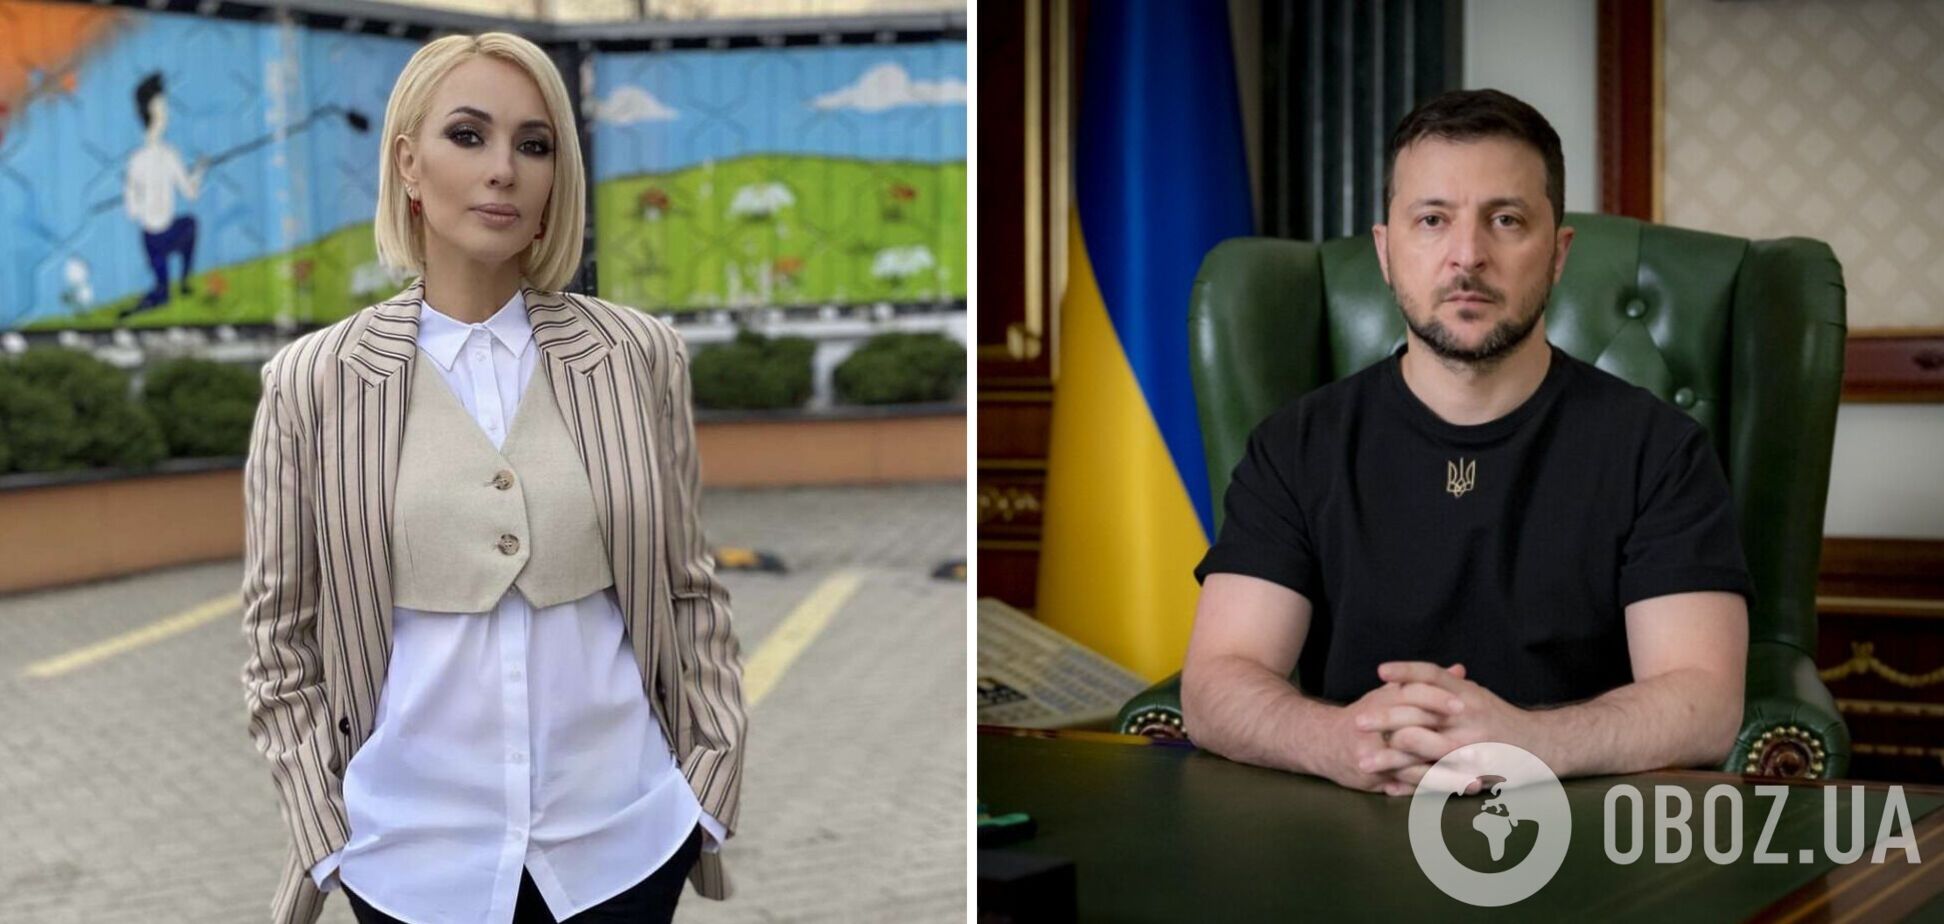 Путіністка Кудрявцева видала, що вона особистий ворог Зеленського